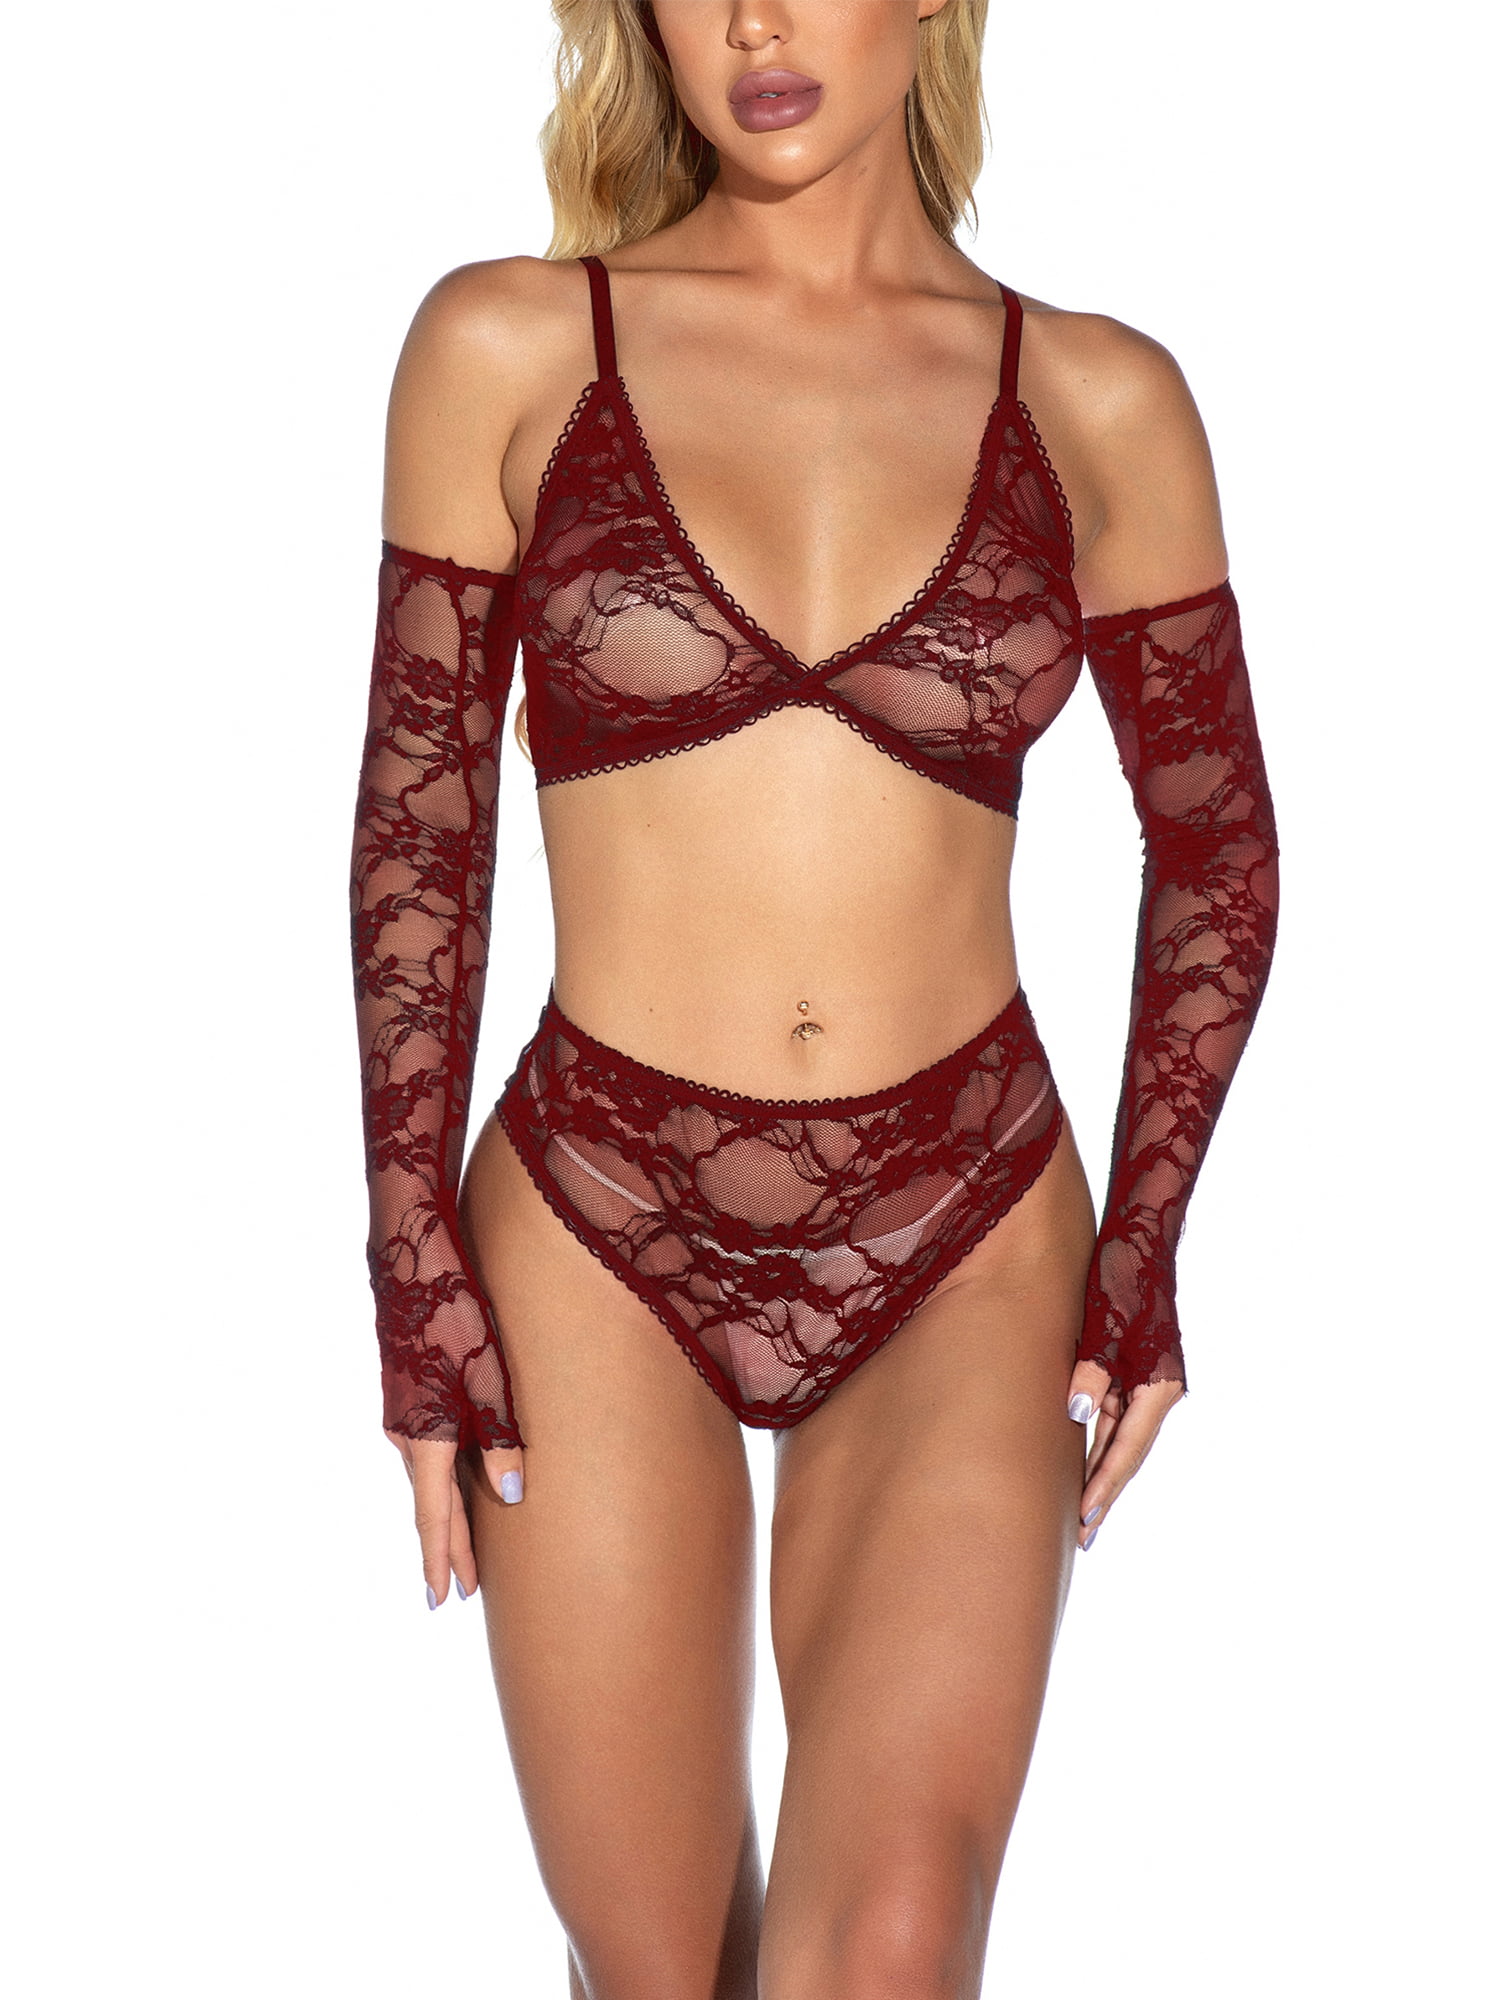 BUKINIE 2021 Lingerie for Women for Sex Fishnet Dresses Mesh Lingerie Fishnet Bodysuits Hollow Babydoll Sleepwear Body Stockings 